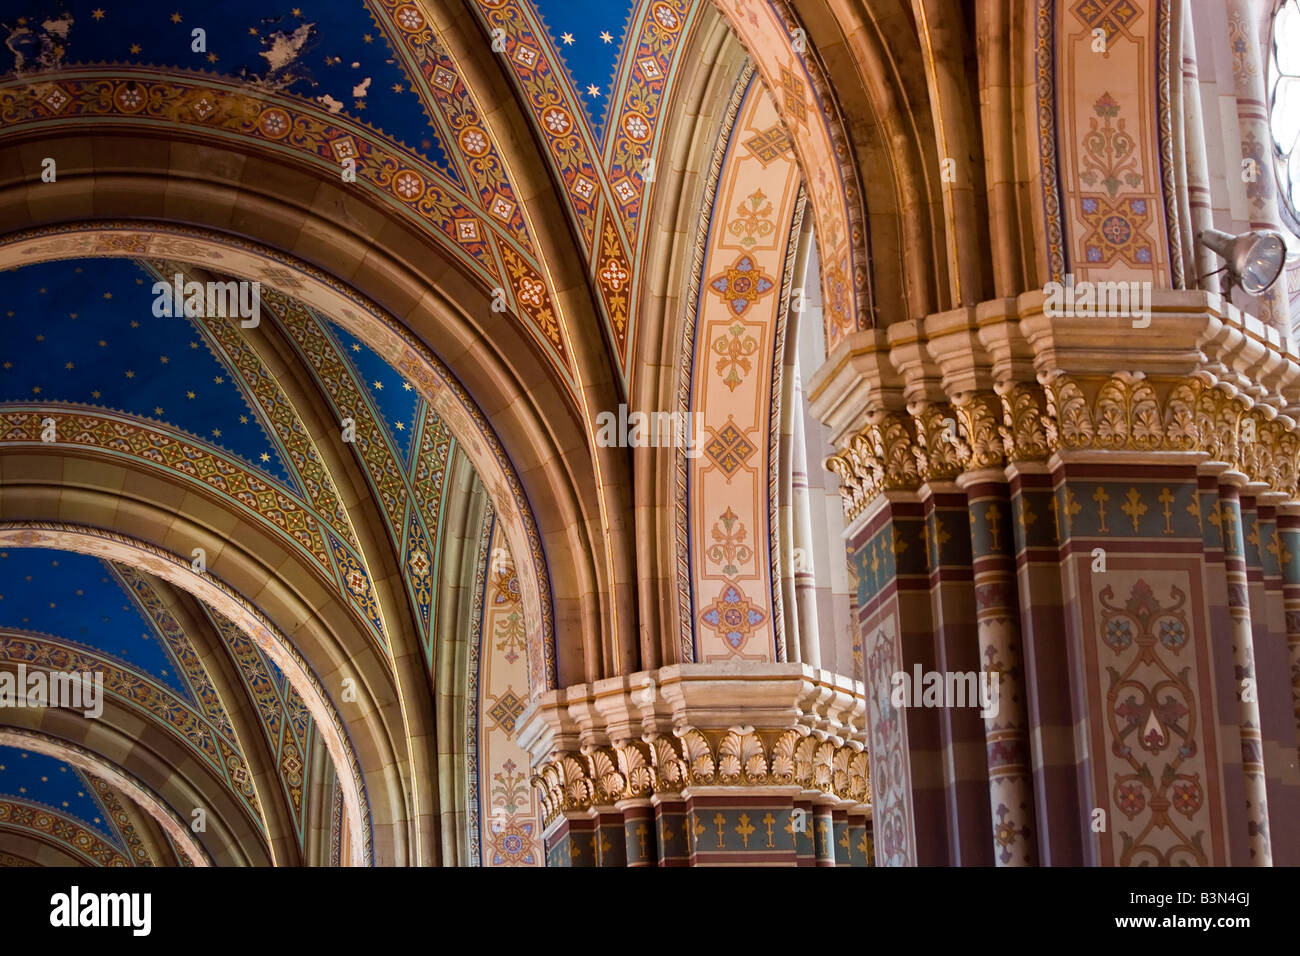 Croatia, Dakovo. Beautiful arches in the cathedral in Dakovo. Stock Photo